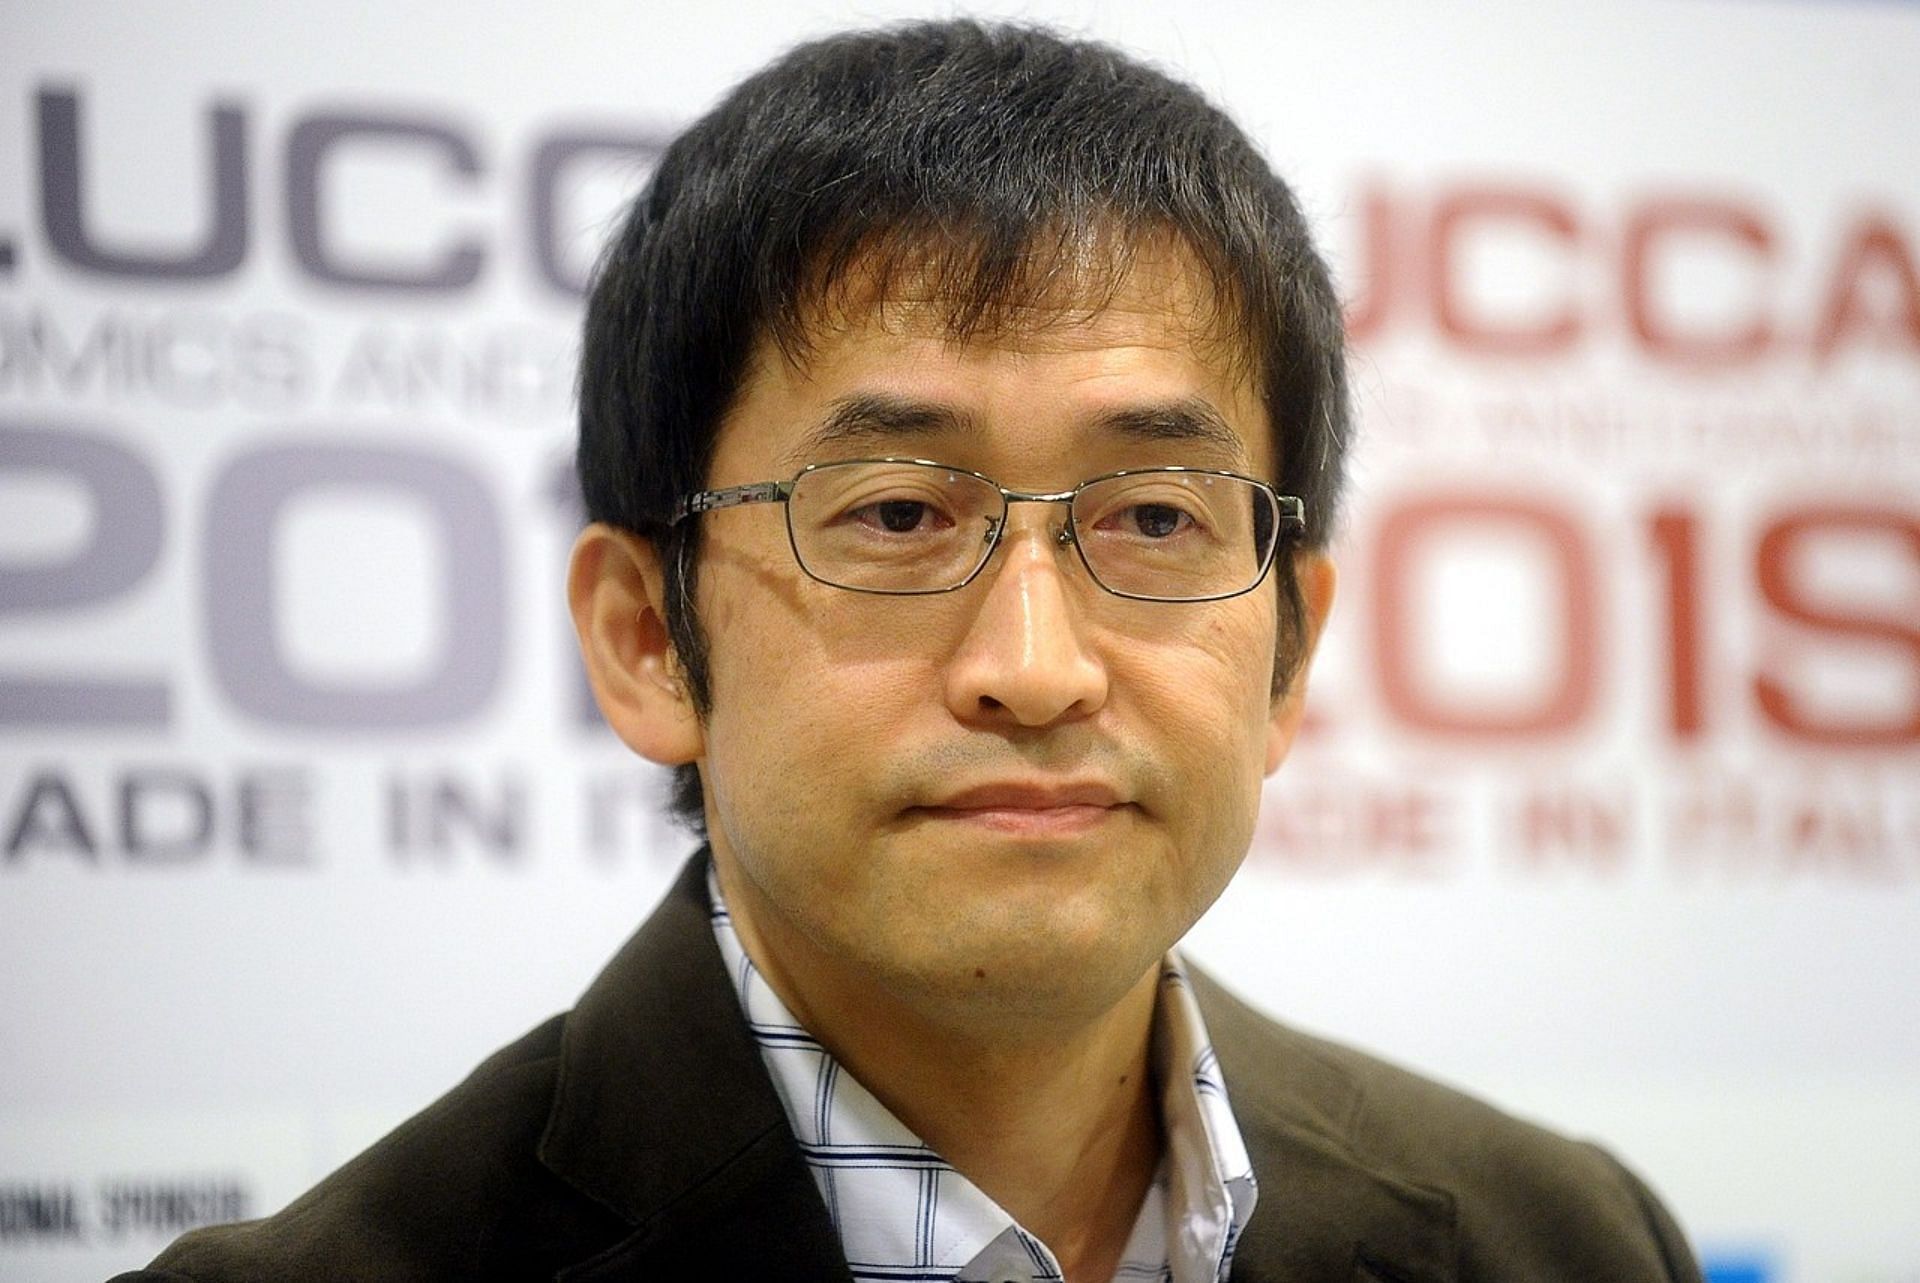 Junji Ito shares his opinion on AI (Image via Junji Ito)